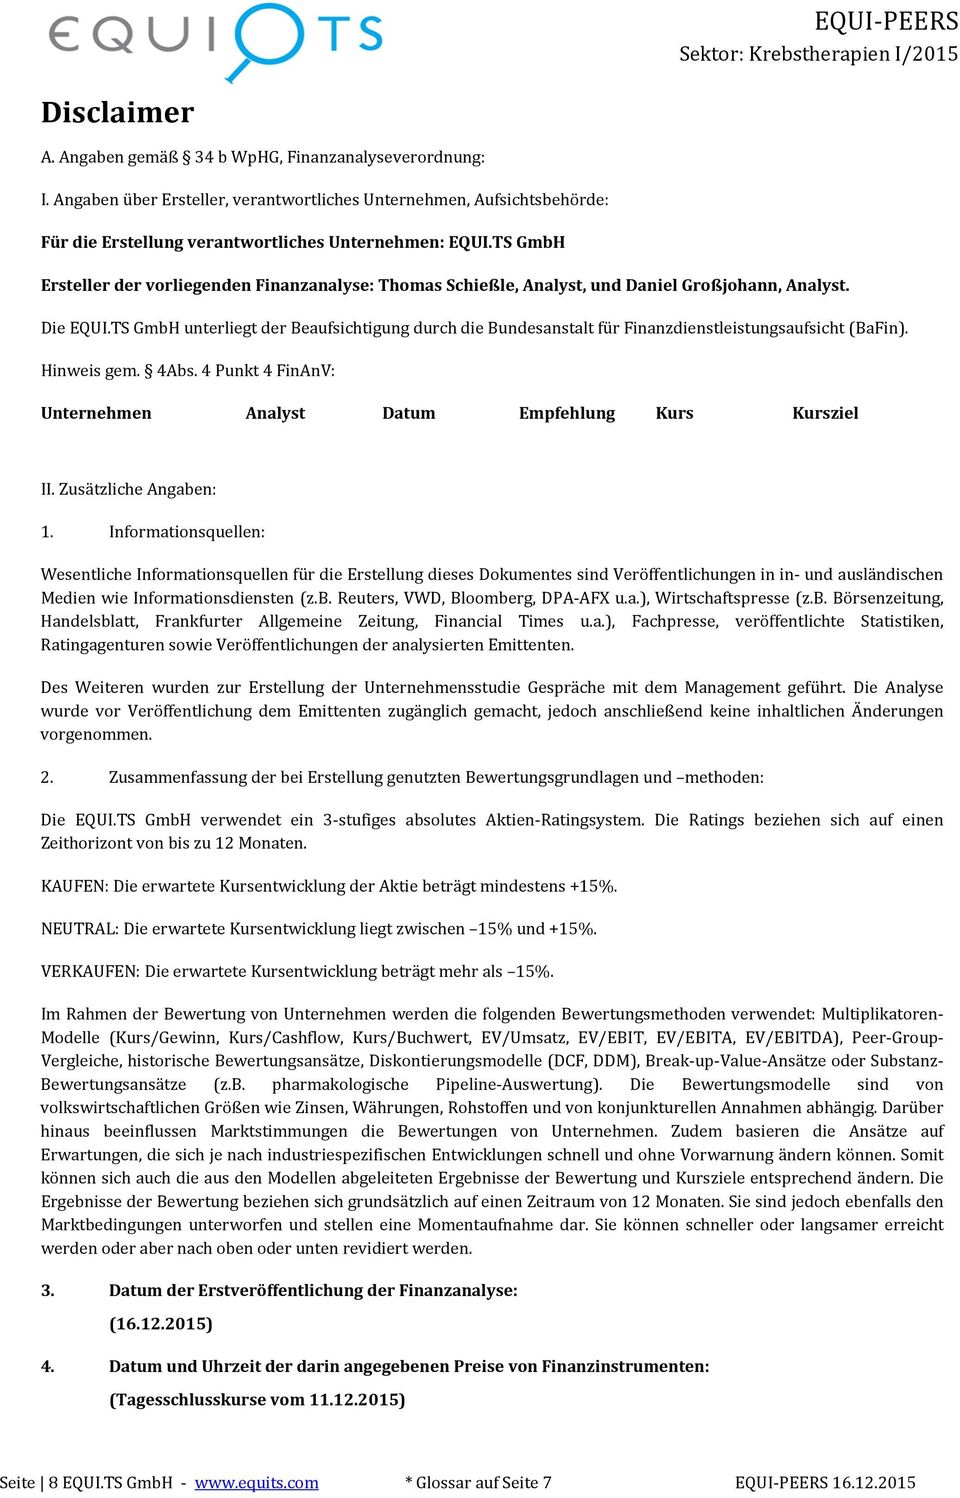 TS GmbH unterliegt der Beaufsichtigung durch die Bundesanstalt für Finanzdienstleistungsaufsicht (BaFin). Hinweis gem. 4Abs. 4 Punkt 4 FinAnV: Unternehmen Analyst Datum Empfehlung Kurs Kursziel II.